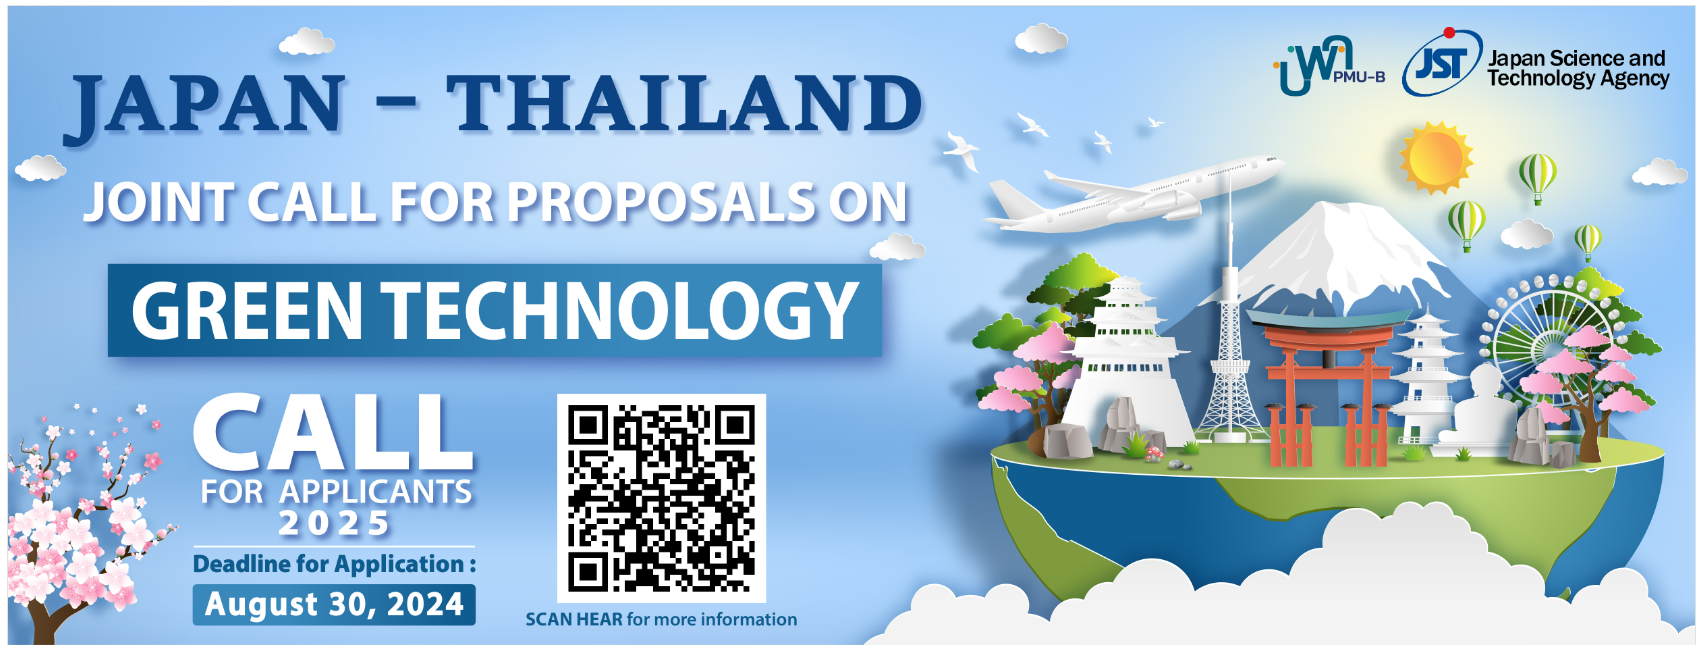 เปิดรับข้อเสนอโครงการวิจัยแผนงาน N49(S4P23) Japan - Thailand Joint Call for Proposals on Green Technology